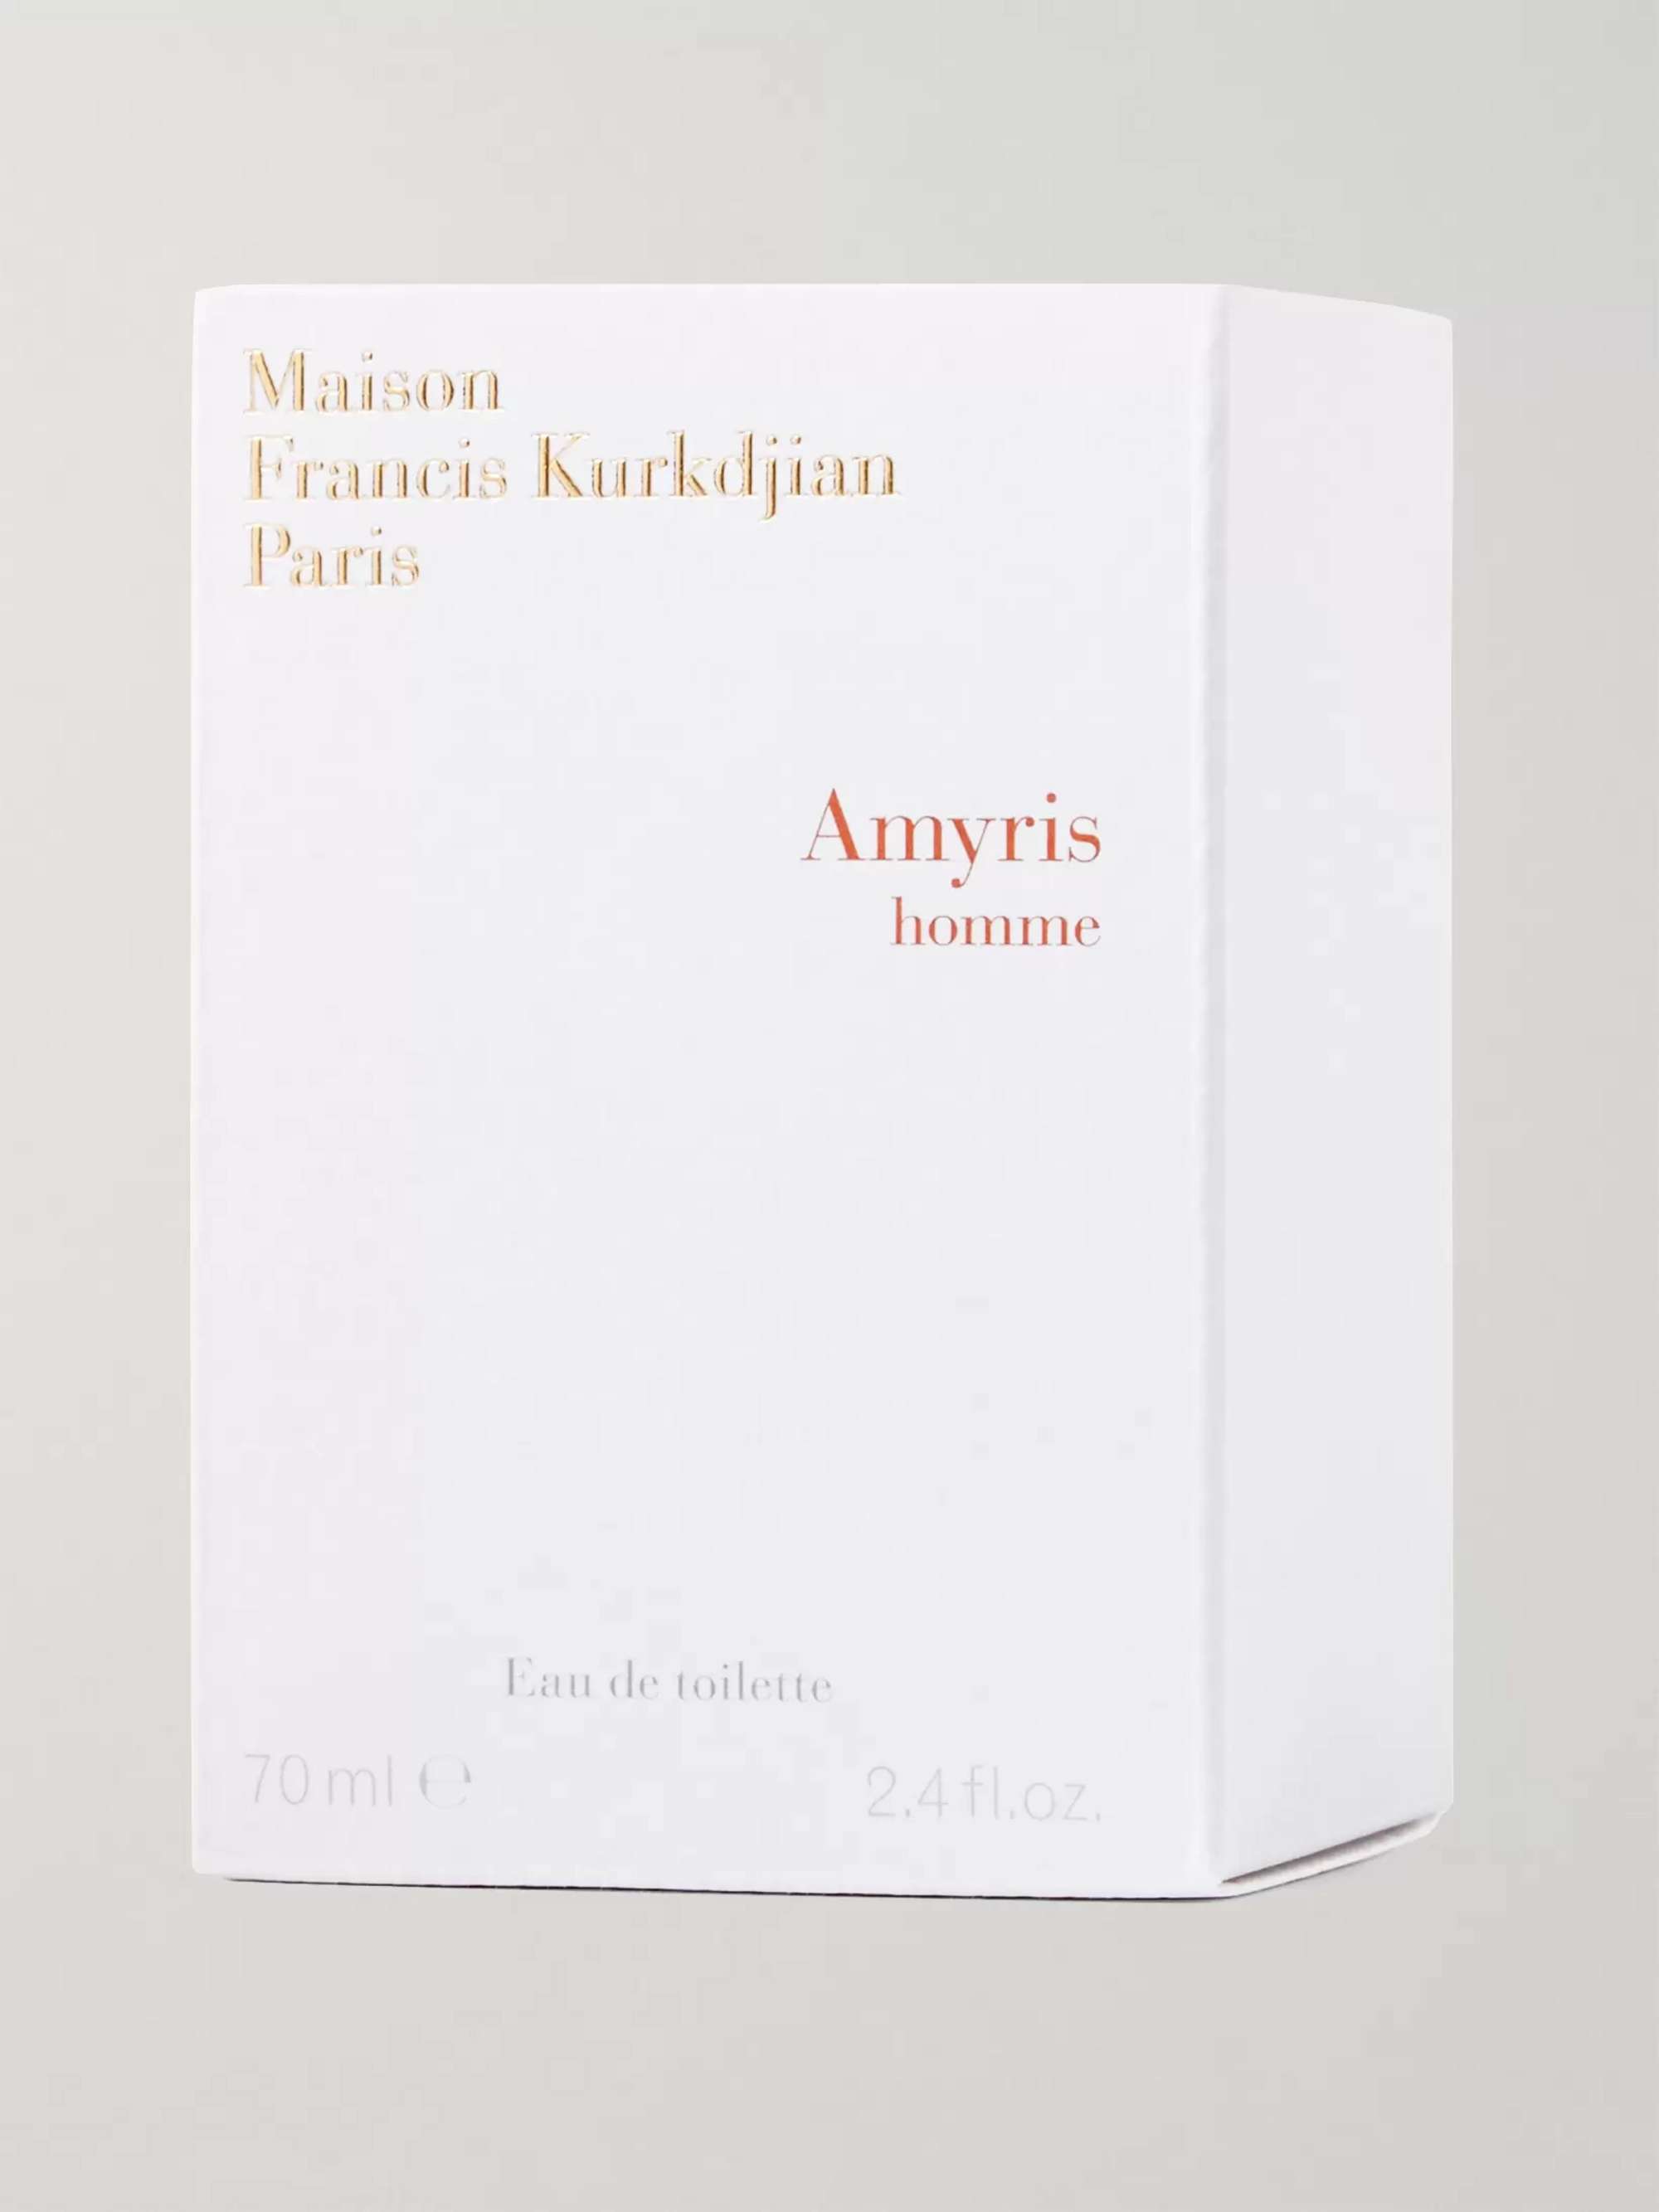 MAISON FRANCIS KURKDJIAN Amyris Homme Eau de Toilette - Rosemary, Modern Woods, 70ml